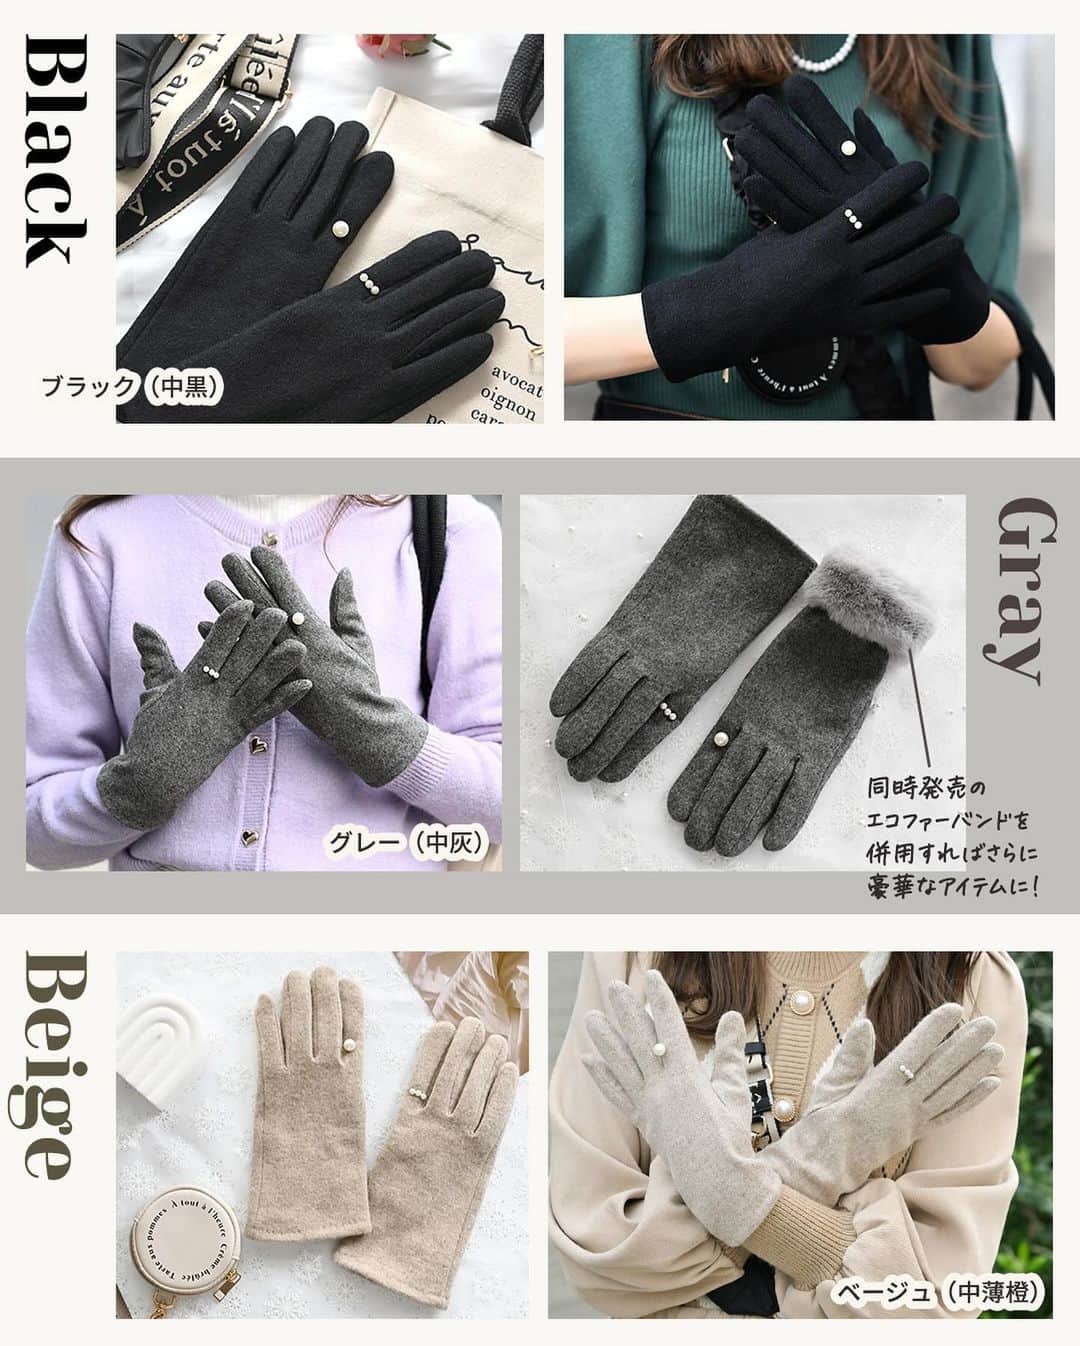 MUMUさんのインスタグラム写真 - (MUMUInstagram)「🧤 10月14日（土）発売の #しまむら @grshimamura ×MUMUコラボの新作🎃 今年も防寒と手元のオシャレが叶う手袋が2型登場♬  より詳しい内容は是非ブログをご覧いただけたら嬉しいです🙇‍♀️  ＜販売店について＞ ----- しまむら全店舗：10月14日（土）～ しまむらオンラインストア：10月14日（土）17時～ https://www.shop-shimamura.com/?b=shimamura -----  ■ 千鳥柄ニットミトン  税込1,419円 【品番】 ブラック（中黒）：336-0383	 ブラウン（中茶）：336-0387 ピンク（中桃）：336-0388 【素材】 表地：アクリル100％ 裏地：ポリエステル100％ 【サイズ】 総丈25cm、掌幅7.5cm、口幅7cm  ミトン型の手袋は可愛いけど使いにくい…そんなストレスを解決してくれるマルチな手袋が誕生！ なんとこちら、ミトン部分をカバー式に！ スマホ操作など指先を使う時はボタンを留めて。 指先を覆いたい時はボタンを外してカバーをスポッ！ 気温や場面に合わせて使い分けができる便利な仕様に♬ 指先フリータイプだから着脱もラクちん◎ リブニット素材を使用し、指を広げやすく、動かしやすく。 裏地には極厚の暖かシャギー素材を使用。 手のひらに密着してくれるから冷たい風も侵入しにくく、ほっかほか♨️ 手首部分も太リブで伸縮性抜群。 こちらも締め付けすぎず程よくフィットしてくれるから風が通らずぬくぬく。 ミトン手袋はデザインによっては子供っぽくなりがちですが、千鳥柄でクラシカルな雰囲気で使えるアイテムに仕上げました* カラーはどんなコーデにも万能なブラック、 まろやかな発色で優しい印象のブラウン、 とびきり可愛いピンクの３色展開。 ふっくら厚手の素材で真冬も頼れる手袋* 防寒や操作性の良さだけでなく、シンプルなコーデのポイントにもなってくれるアイテムです☺️  ■パールあしらいグローブ  税込1,419円 【品番】 ベージュ（中薄橙）：336-0391	 グレー（中灰）：336-0394 ブラック（中黒）：336-0398 【素材】 表地：ウール78％ナイロン22％ 裏地：ポリエステル100％ 【サイズ】 総丈24cm、掌幅7.5cm、口幅10cm  ほんのり大人可愛いポイントが欲しい方にオススメのシックなグローブも発売* シンプルなグローブに見えて、実はパール付き💎 まるでパールリングをつけているようなルックスに。 左手の人差し指には約7mmの大粒パールを。 右手の人差し指には３つの小粒パールをプラス。 パールはしっかりと本体に縫いつけ、取れにくいよう補強しています。 親指と人差し指の先はスマホ対応◎ グローブを外さなくてもスマホを操作できてとっても便利♬ 上品に身につけられるよう、素材にもこだわりを。 なんとウールを78％使用。 保温性で頼れるというメリットのほか、とっても高級感のある見た目に✨ ナイロンとのコンビネーションでなめらかに、そして摩耗しにくく！ ウール素材のチクチク感が苦手な方にも安心して着用していただけるよう、内側はふんわりやわらかな肌触りのシャギー素材（ポリエステル100％）を使用。 厚みがあり、冷たい風の侵入もガード。 伸縮性もあるので着脱もラクラクです◎ 単体でもとっても素敵なグローブですが、同時発売（しまむらオンラインストア限定）のワンタッチエコファーバンドを併用すればさらに豪華なアイテムに！ カラーは手元を明るく演出してくれるベージュ、 やわらかなノーブルグレー、 パールパーツが映えるブラックの３色展開。 どのカラーを選んでも美しい手元に彩ってくれる「美グローブ」です。 ※パールの素材はプラスチックを使用。 . #PR #プチプラコーデ #instagood #プチプラ #手袋 #instalike #服好きな人と繋がりたい #ootd #fashion #MUMU #流行 #しまむらコーデ #しまパト #grshimamura #しまむら購入品 #防寒 #outfit #しまスタ #プチプラファッション #mumuニスタ #mumuコラボ #ミトン #パール #便利グッズ」10月12日 22時04分 - mumudesukamumudesuyo